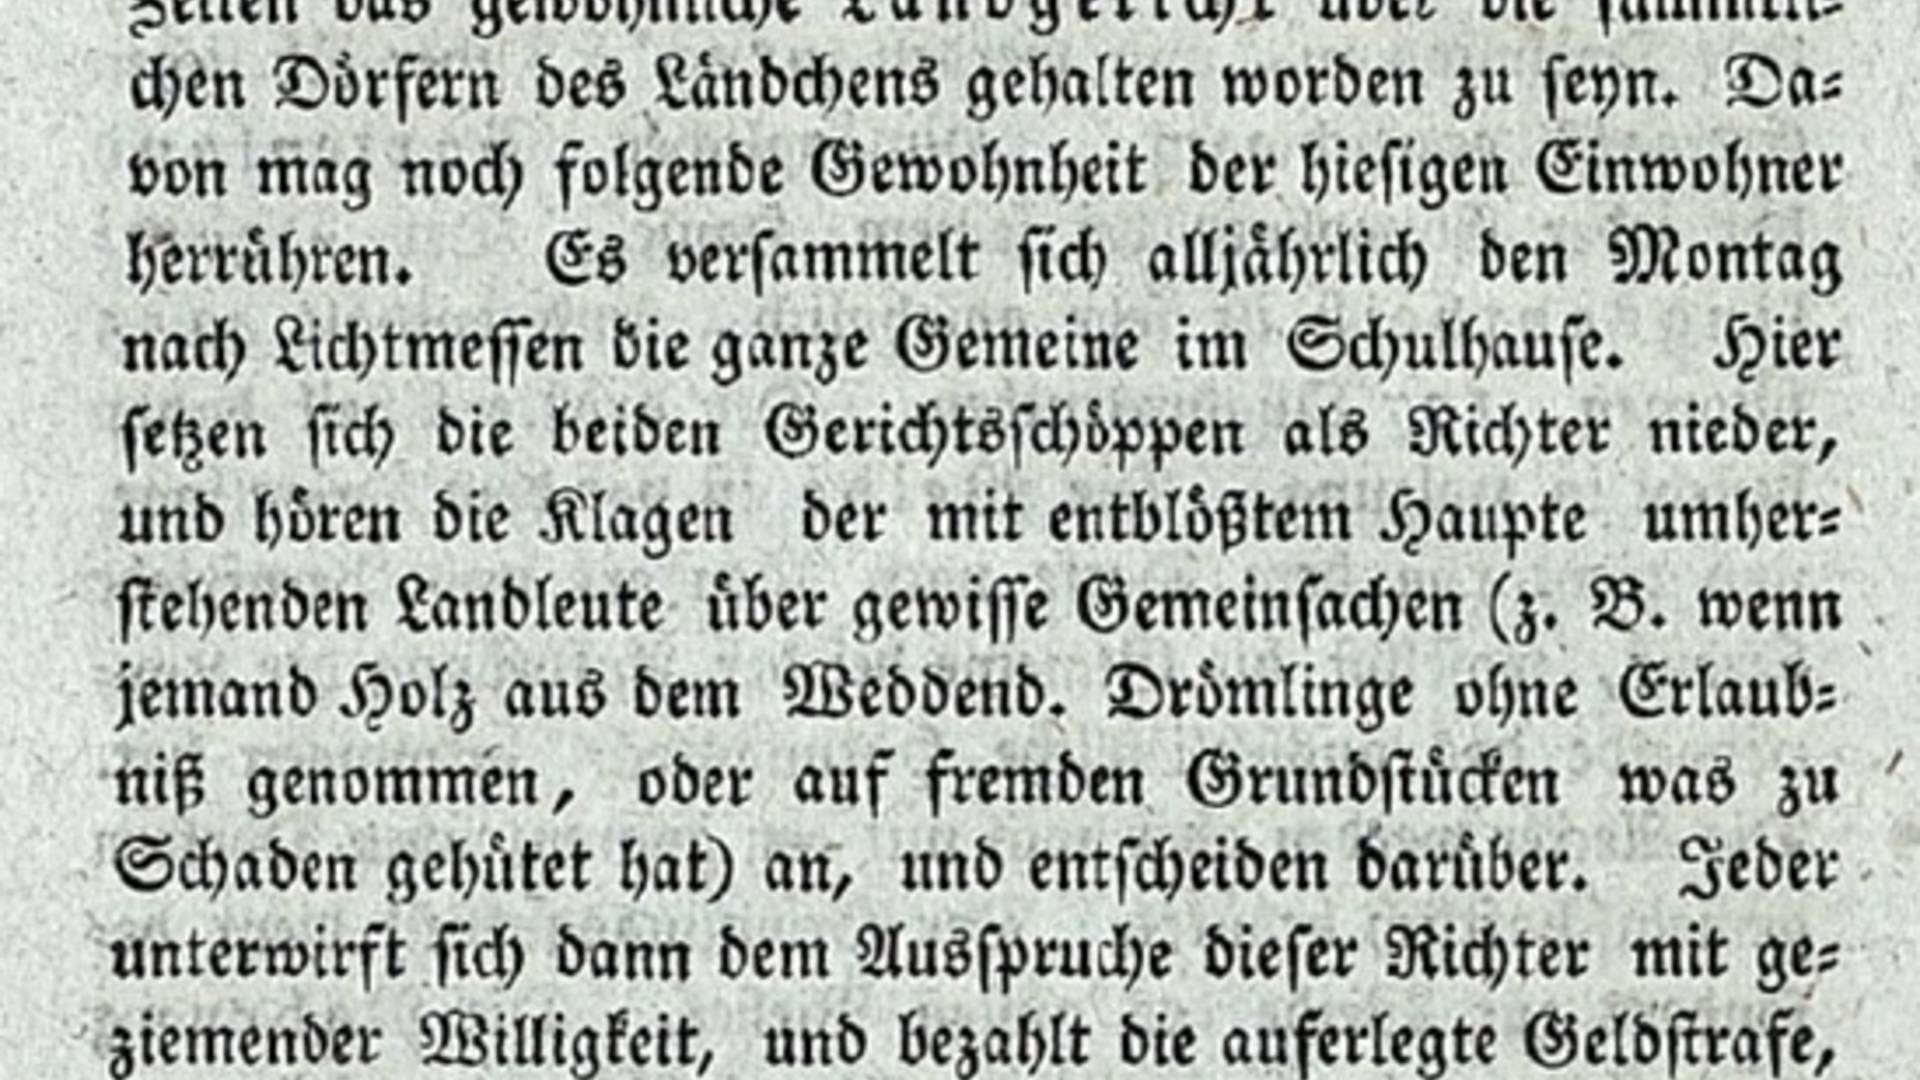 anekdote weddendorf ©Behrends-Chronik 1798